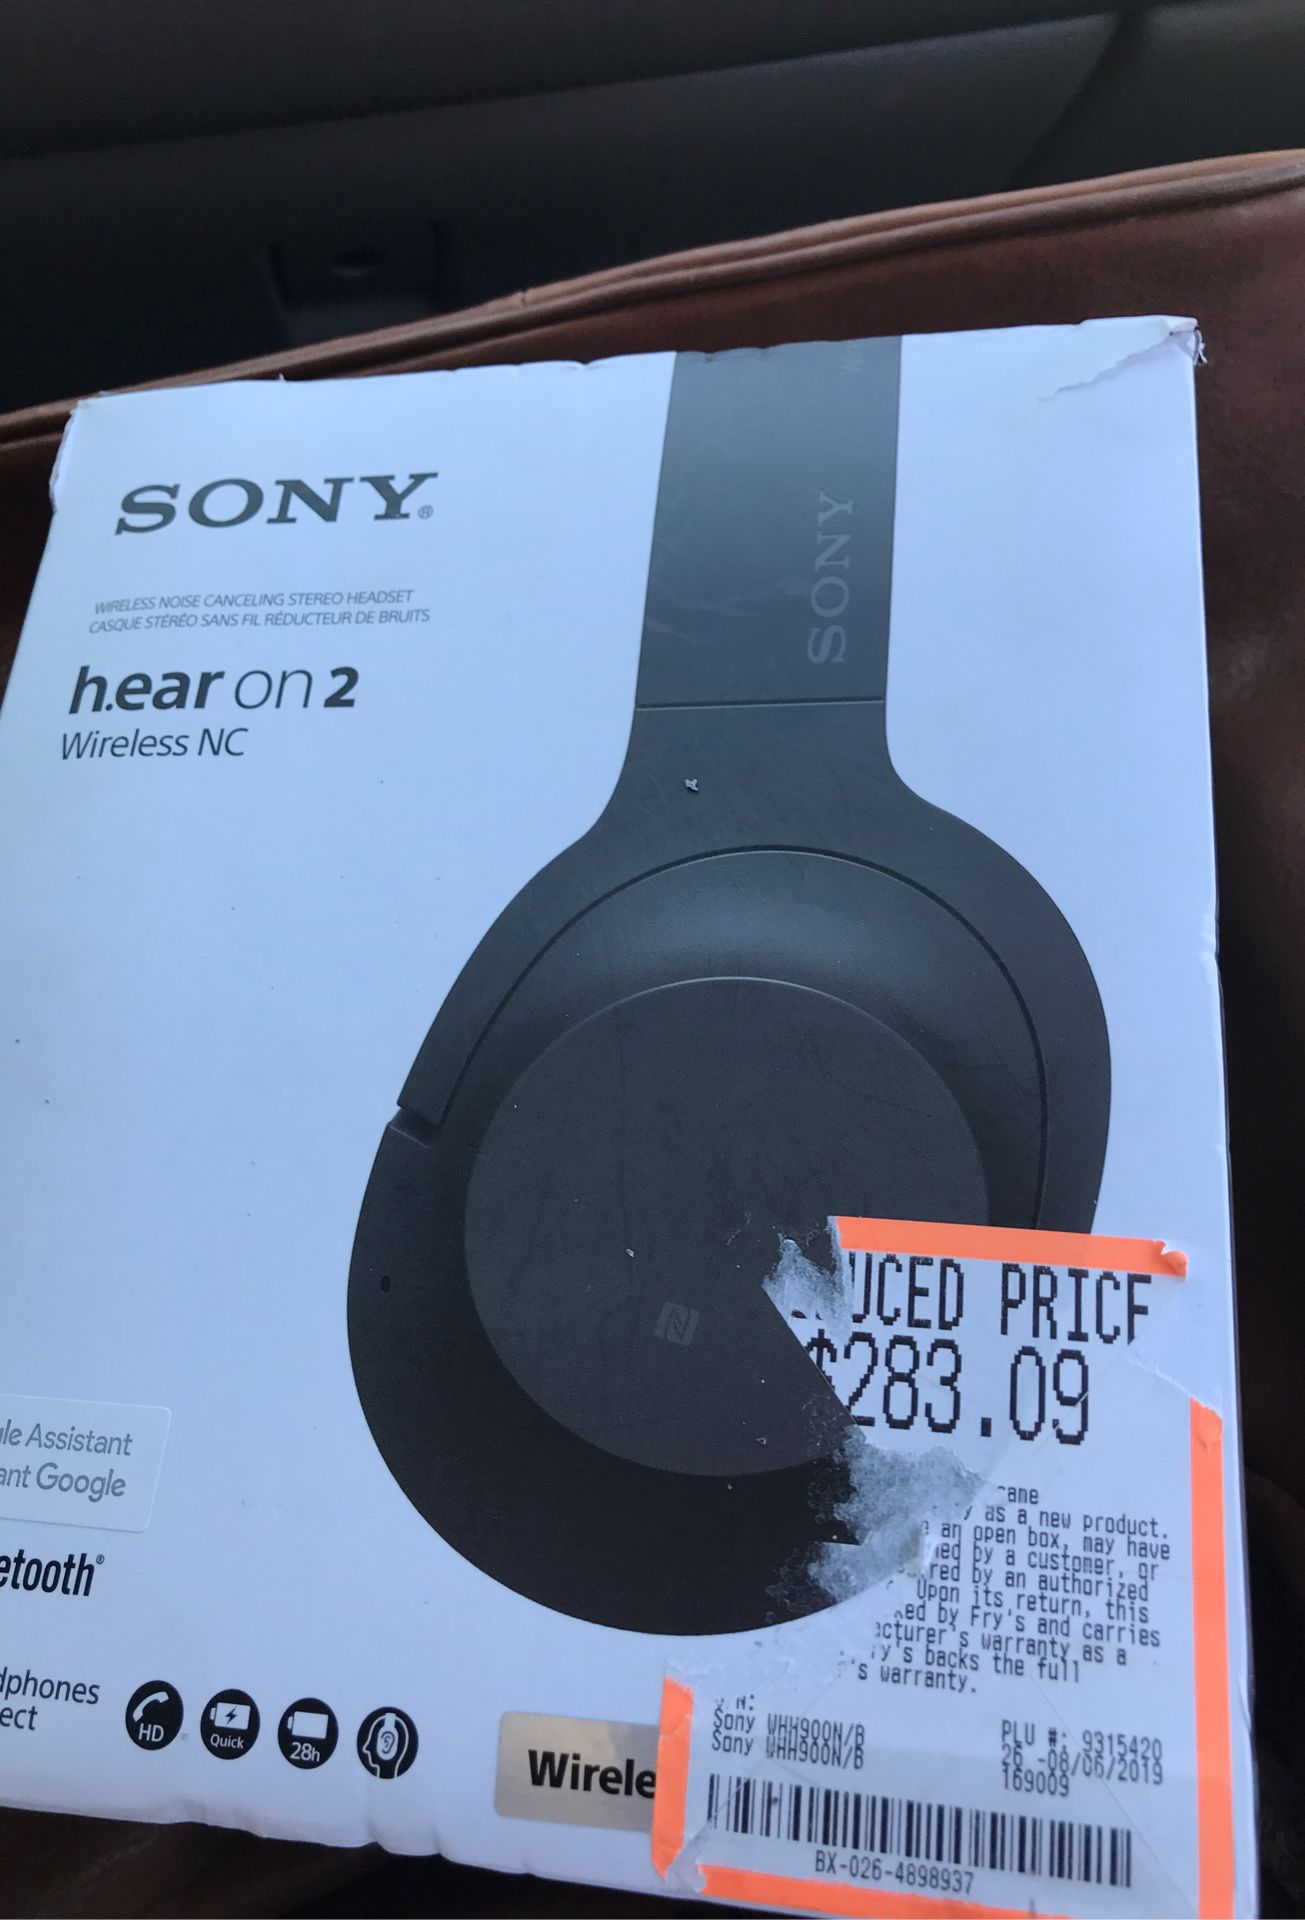 Sony wireless h.ear on 2